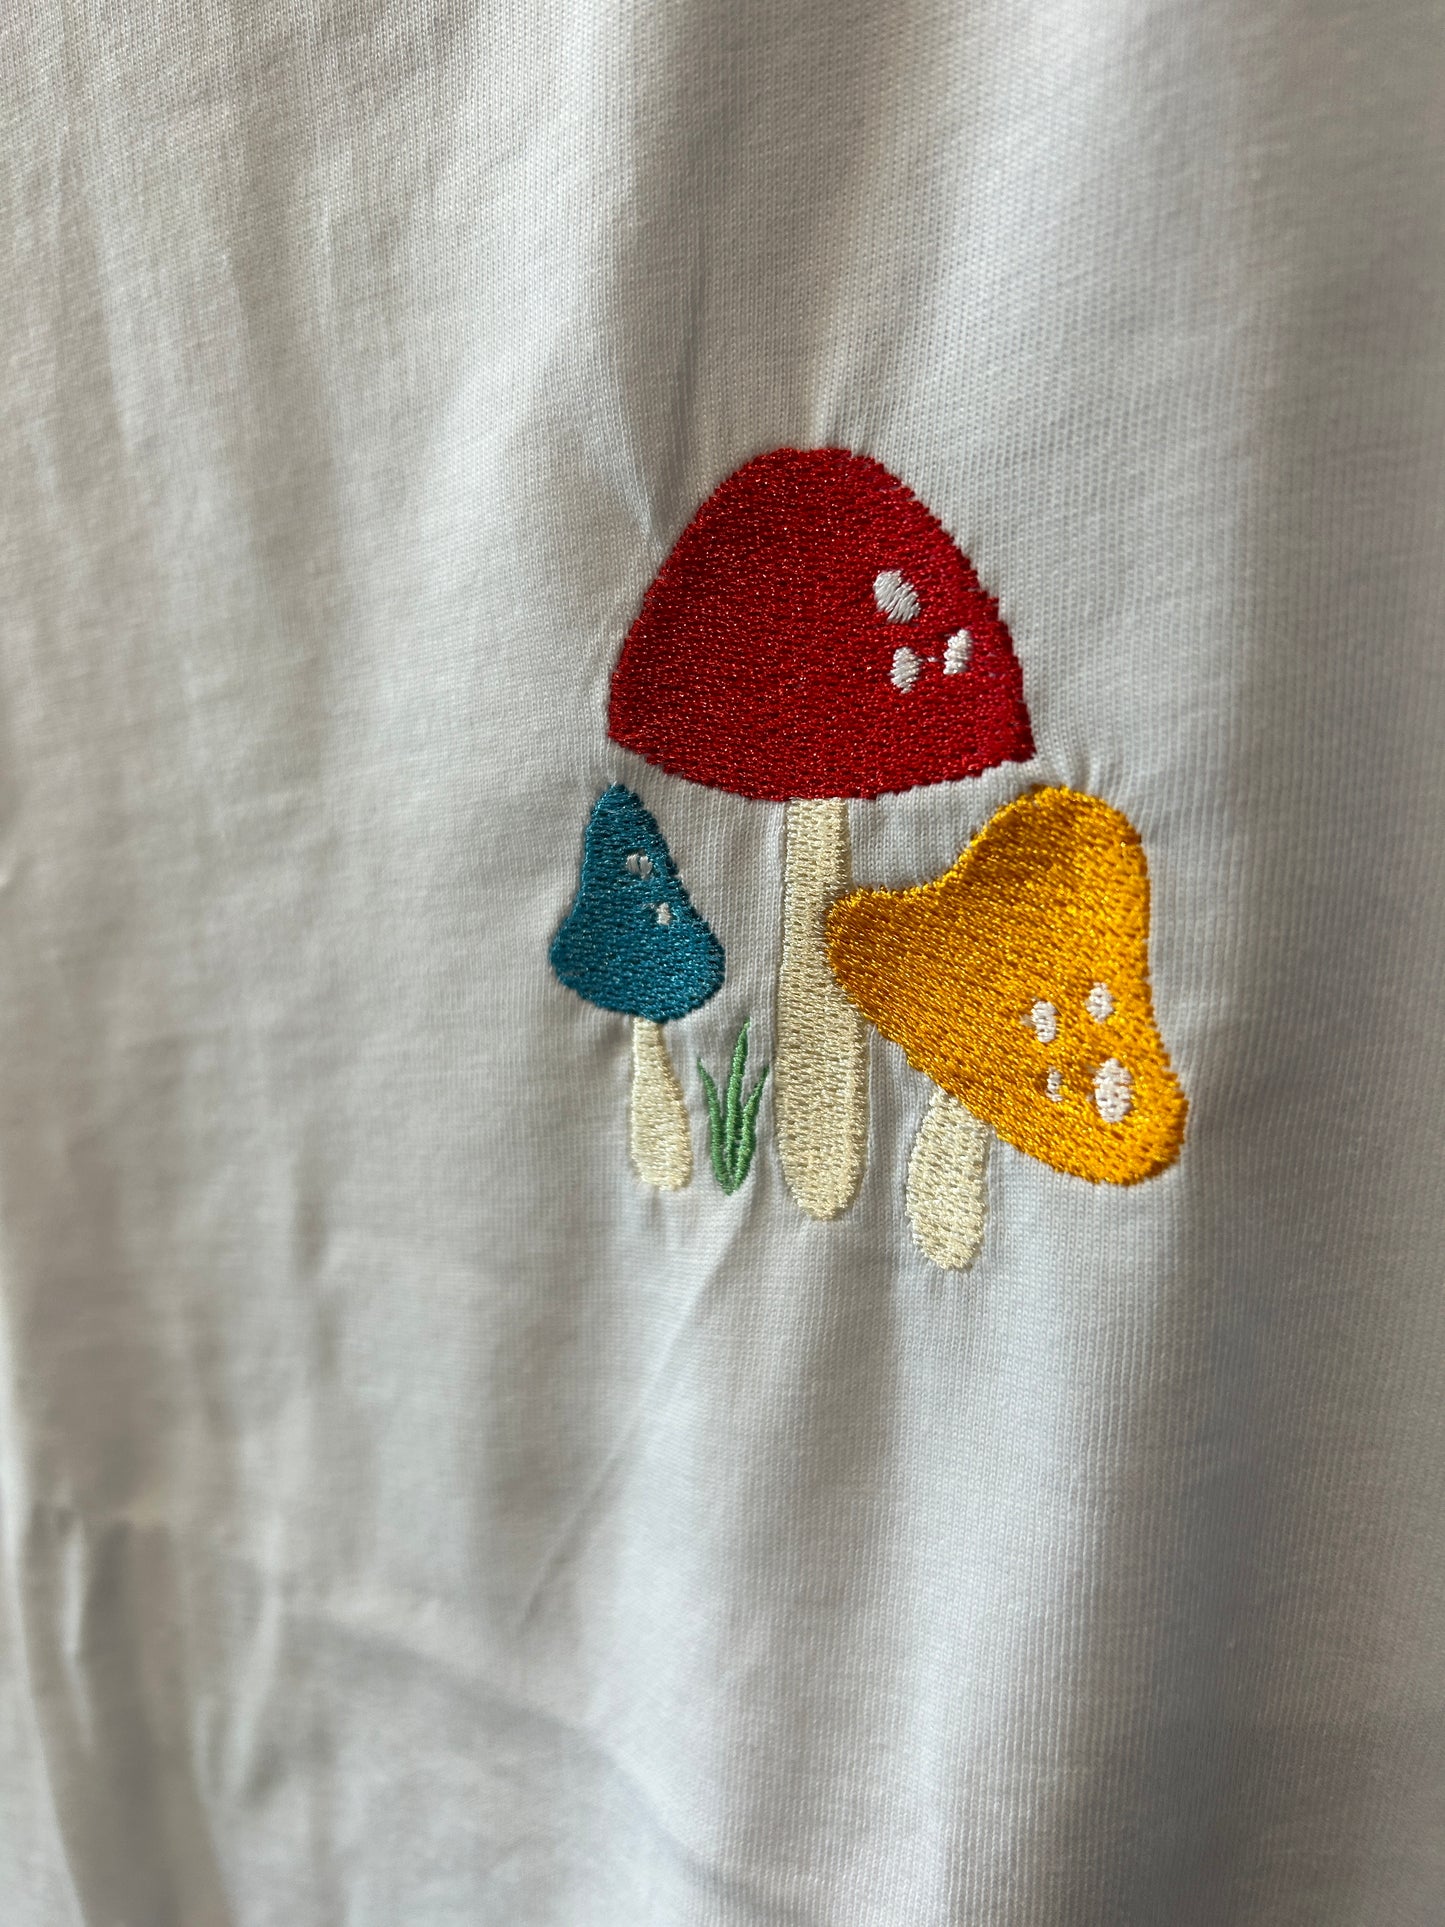 White Mini Mushrooms T-shirt SIZE X-LARGE